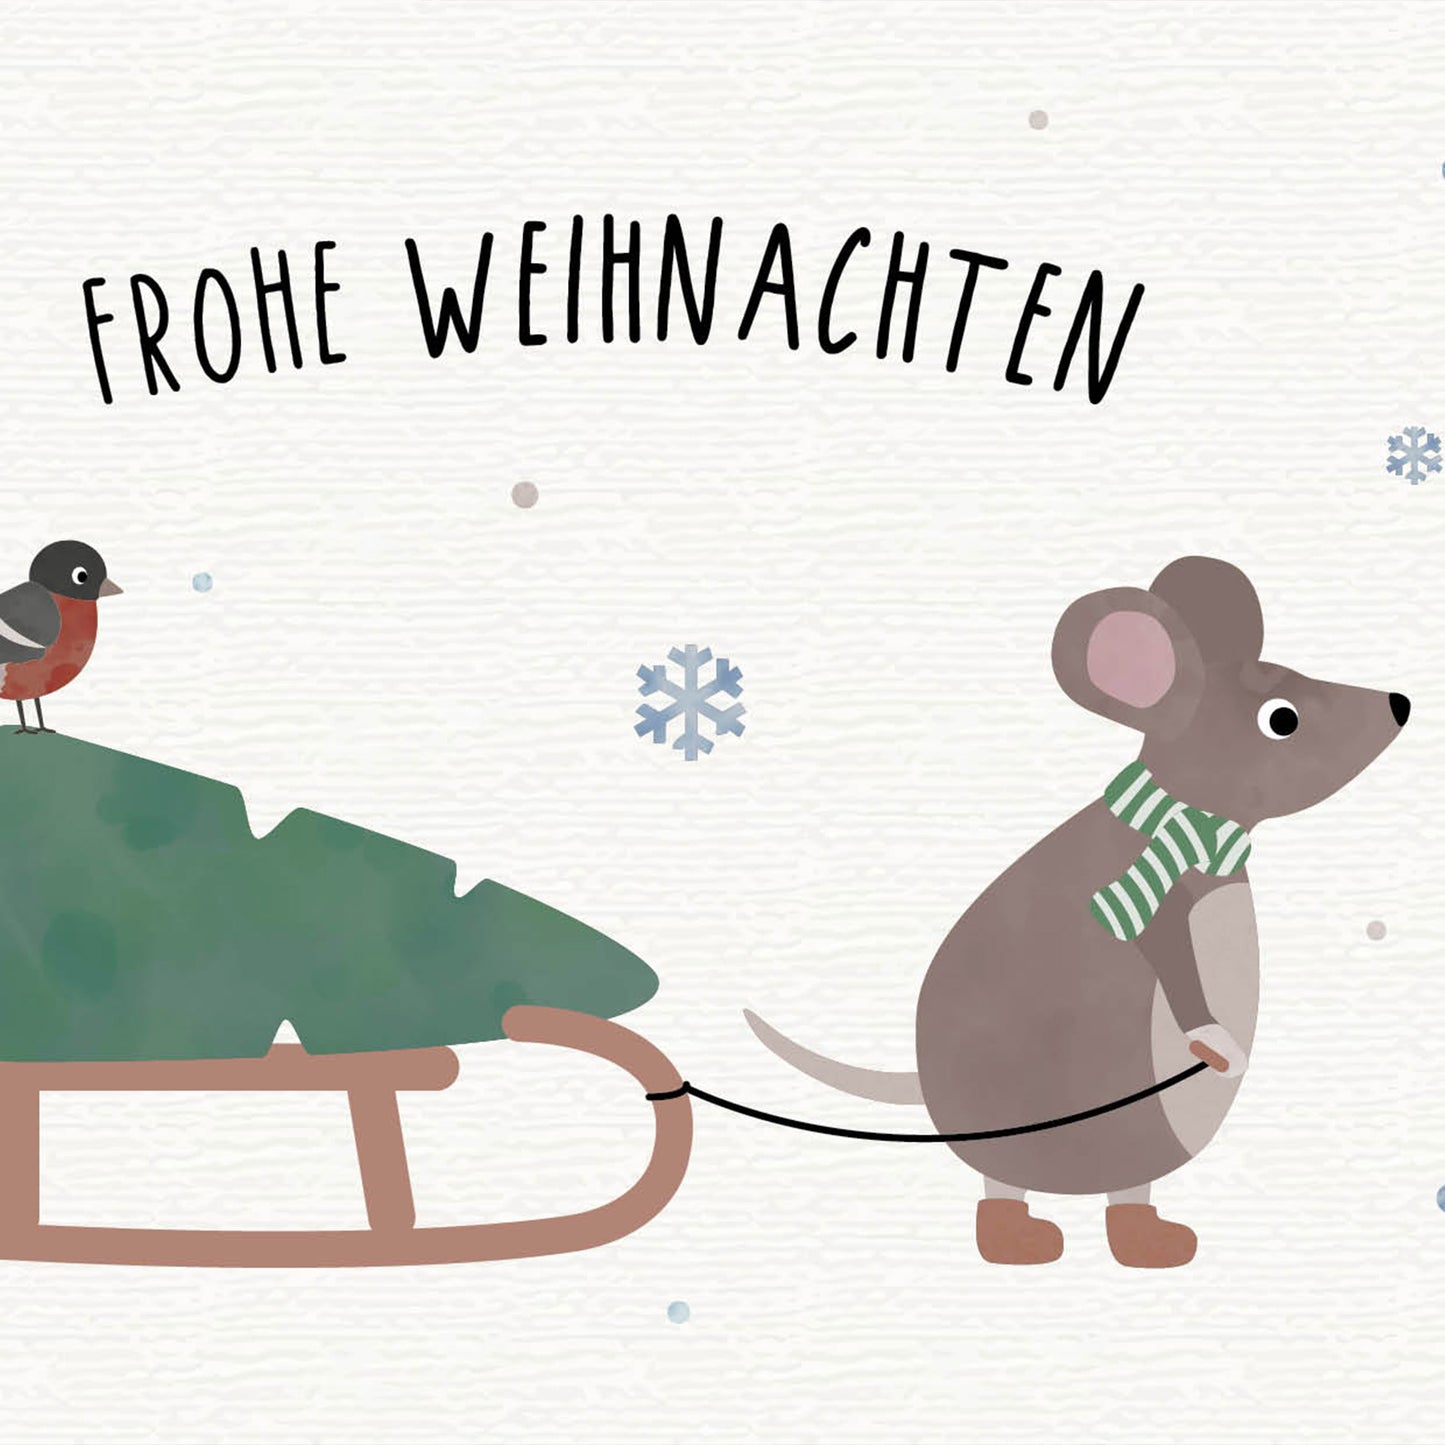 Postkarte - Maus "Frohe Weihnachten"